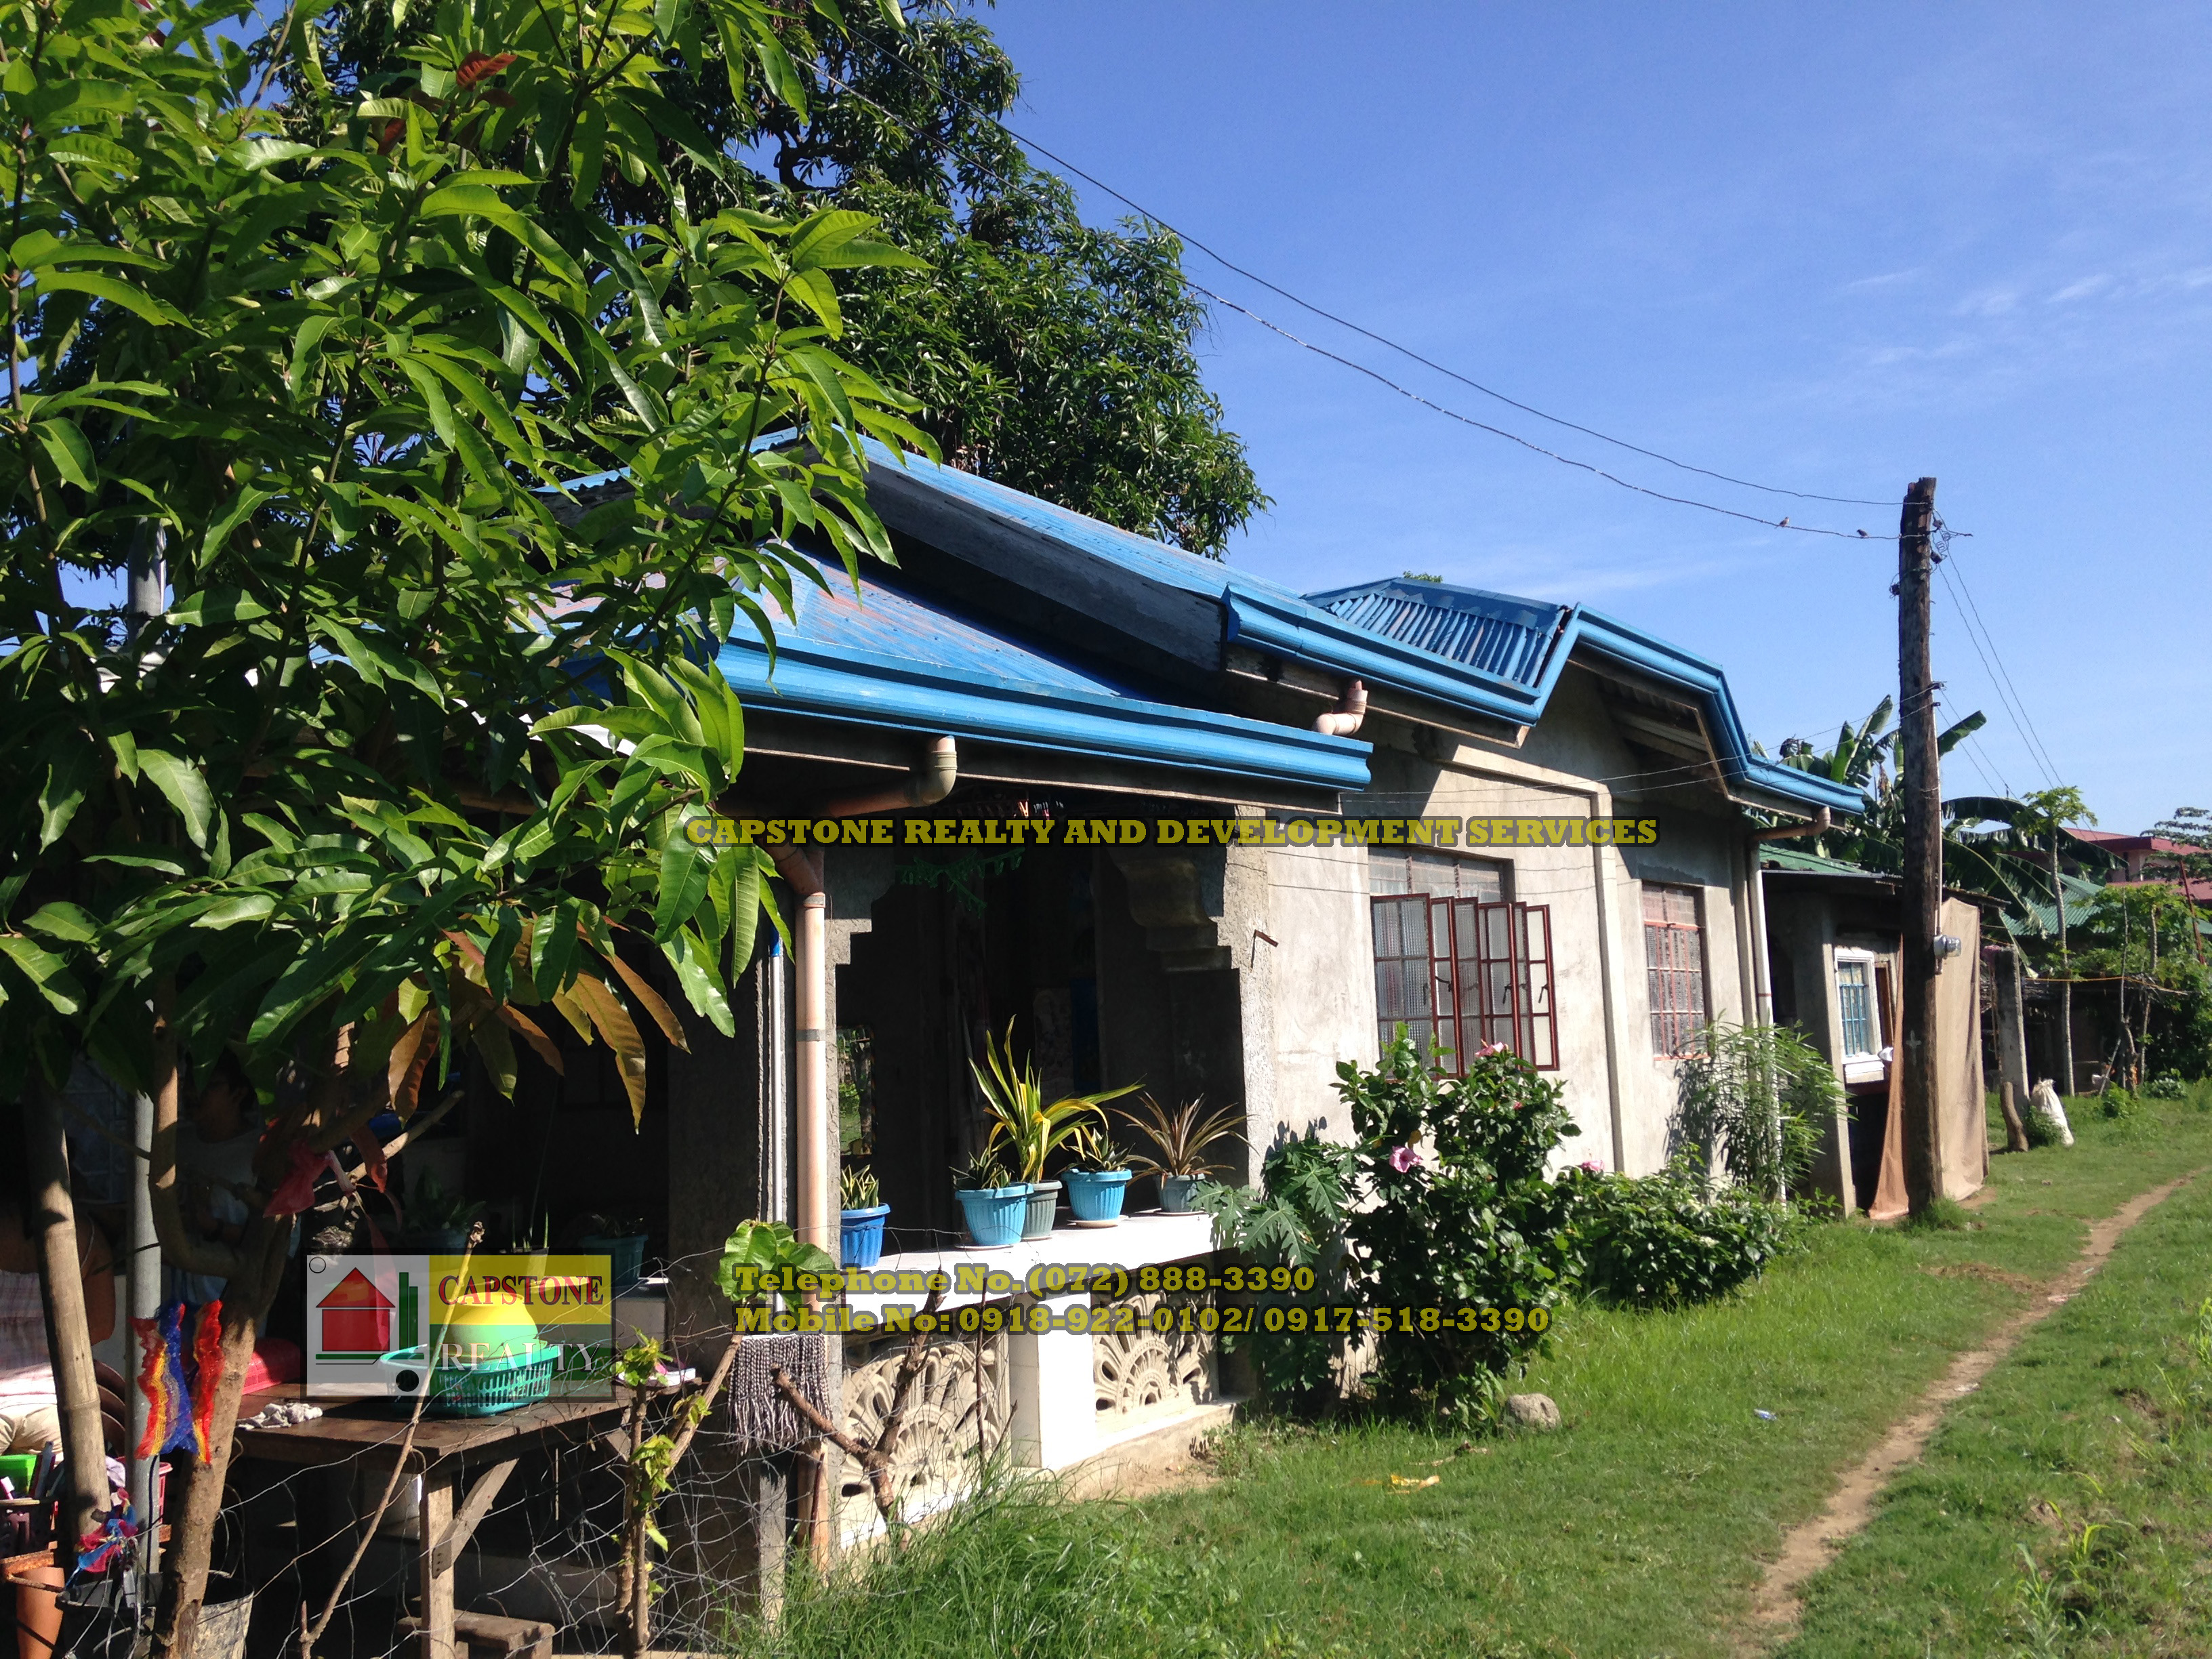 House and Lot For Sale, Bauang La Union, Ilocos